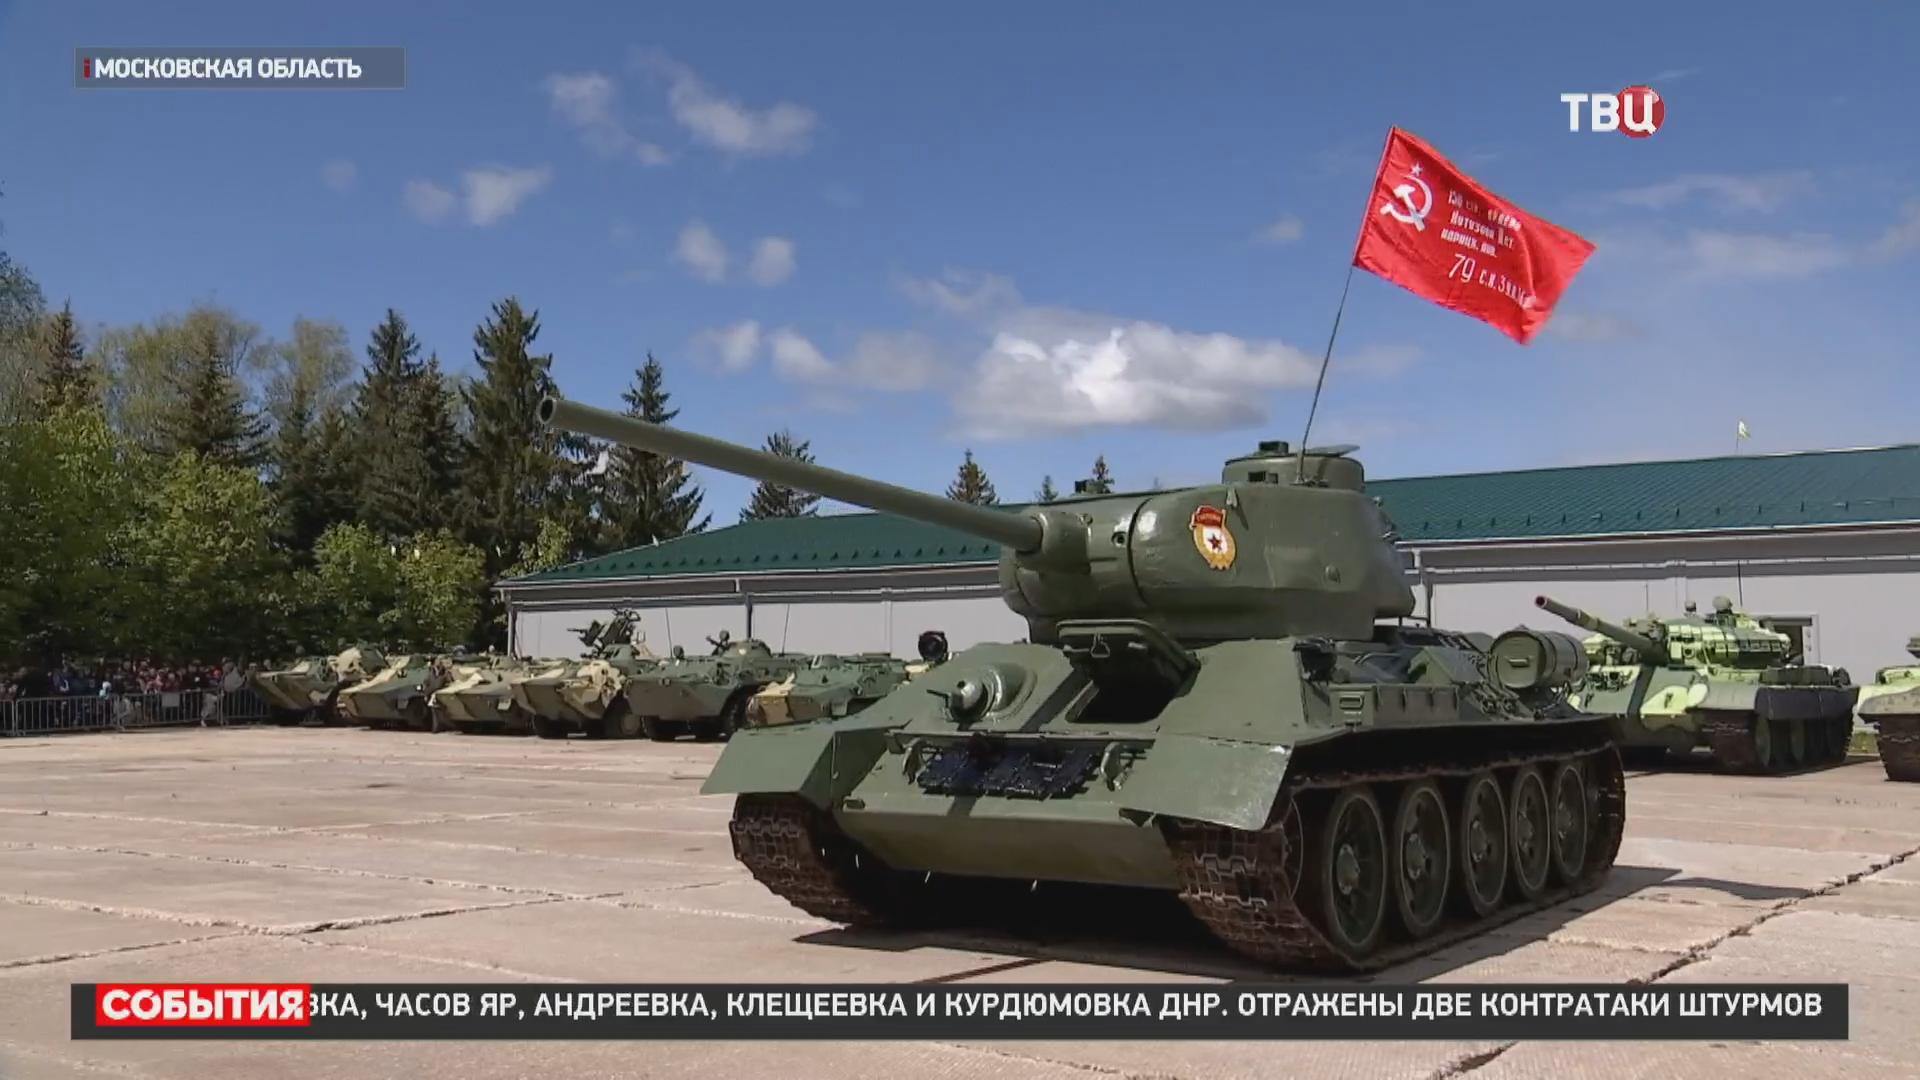 Легендарный танк Т-34 представили в подмосковном парке "Патриот" / События на ТВЦ